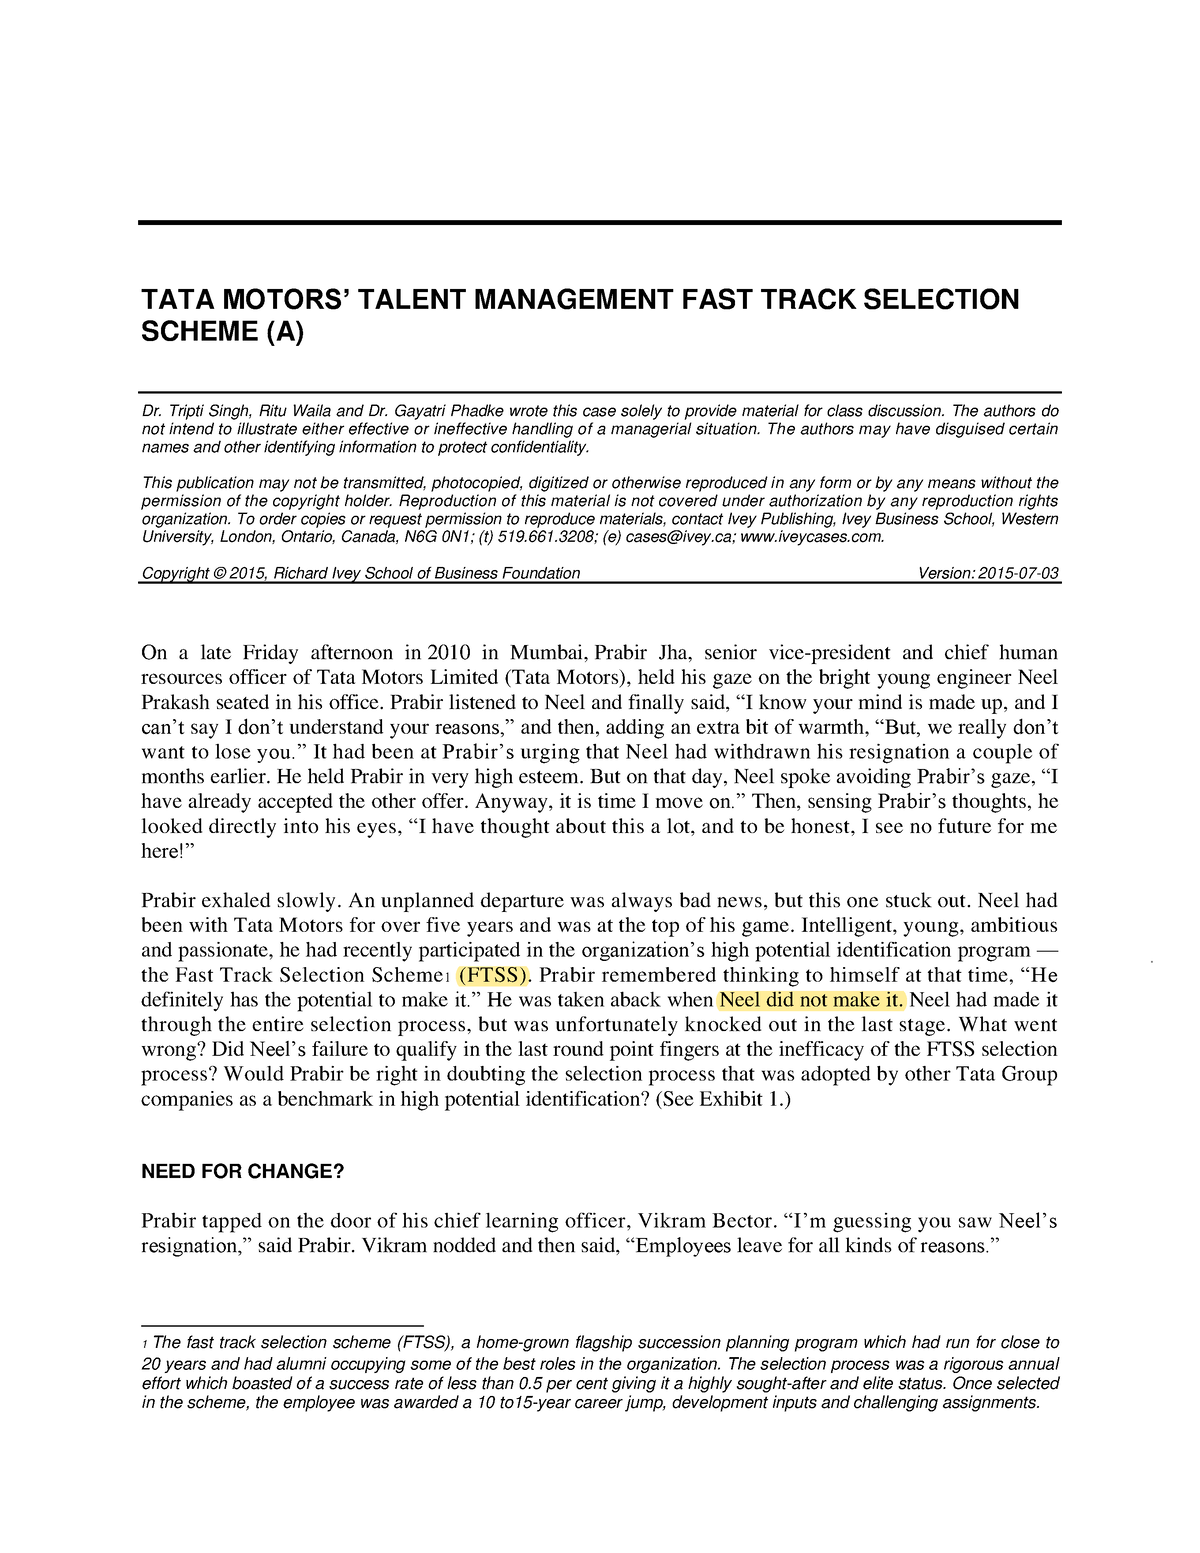 tata motors talent management